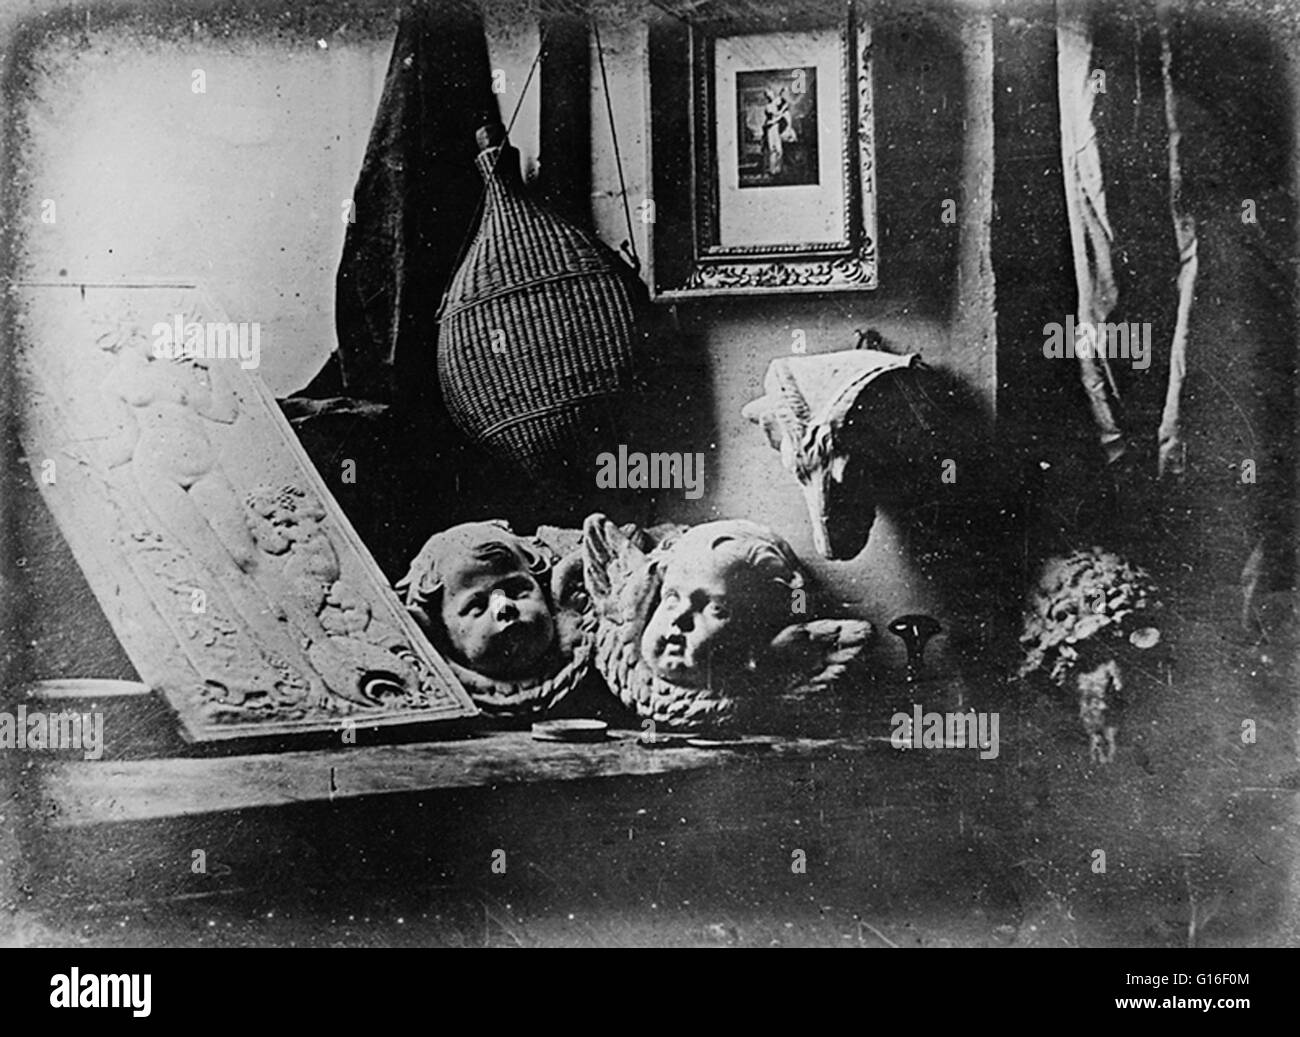 Daguerre die frühesten zuverlässig datiert Daguerreotypie, Stillleben mit Gipsabgüssen, erfolgte im Jahre 1837. Louis Daguerre (1787-1851) war ein französischer Künstler und Fotograf, anerkannt für seine Erfindung der Daguerreotypie der Fotografie. Die daguerreoty Stockfoto